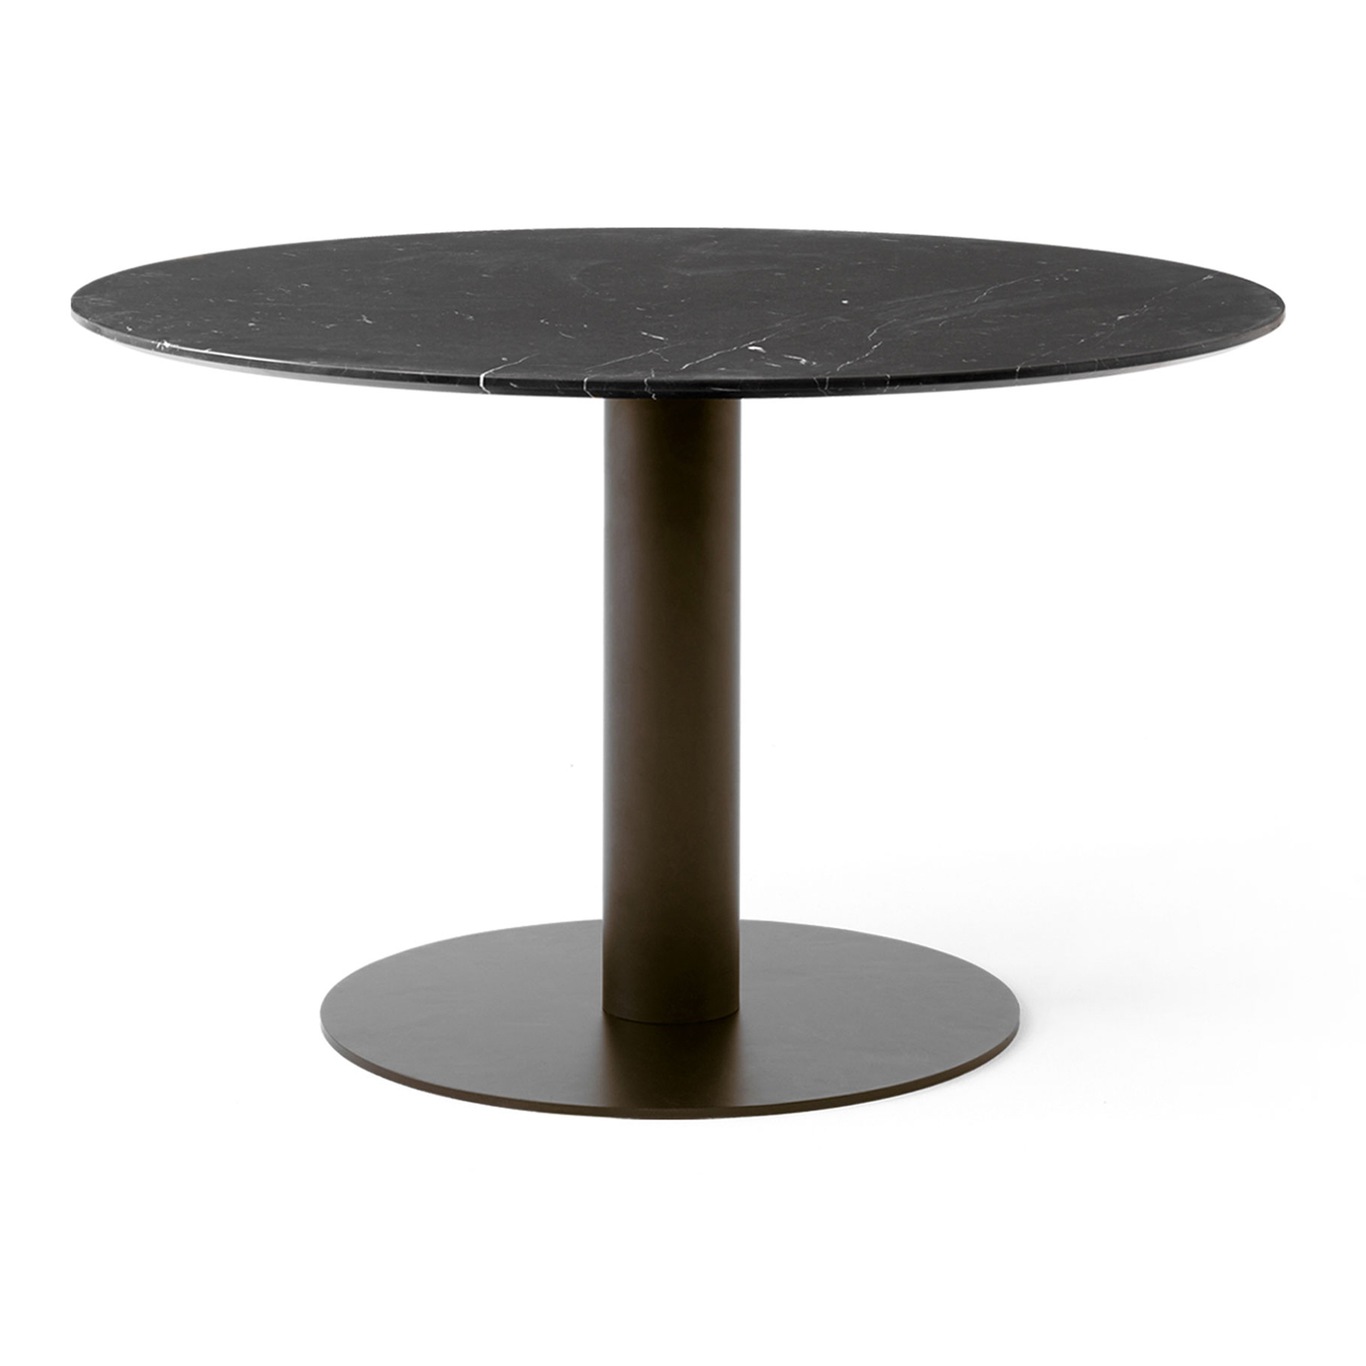 In Between SK19 Table 120cm, Black Marble / Bronzed